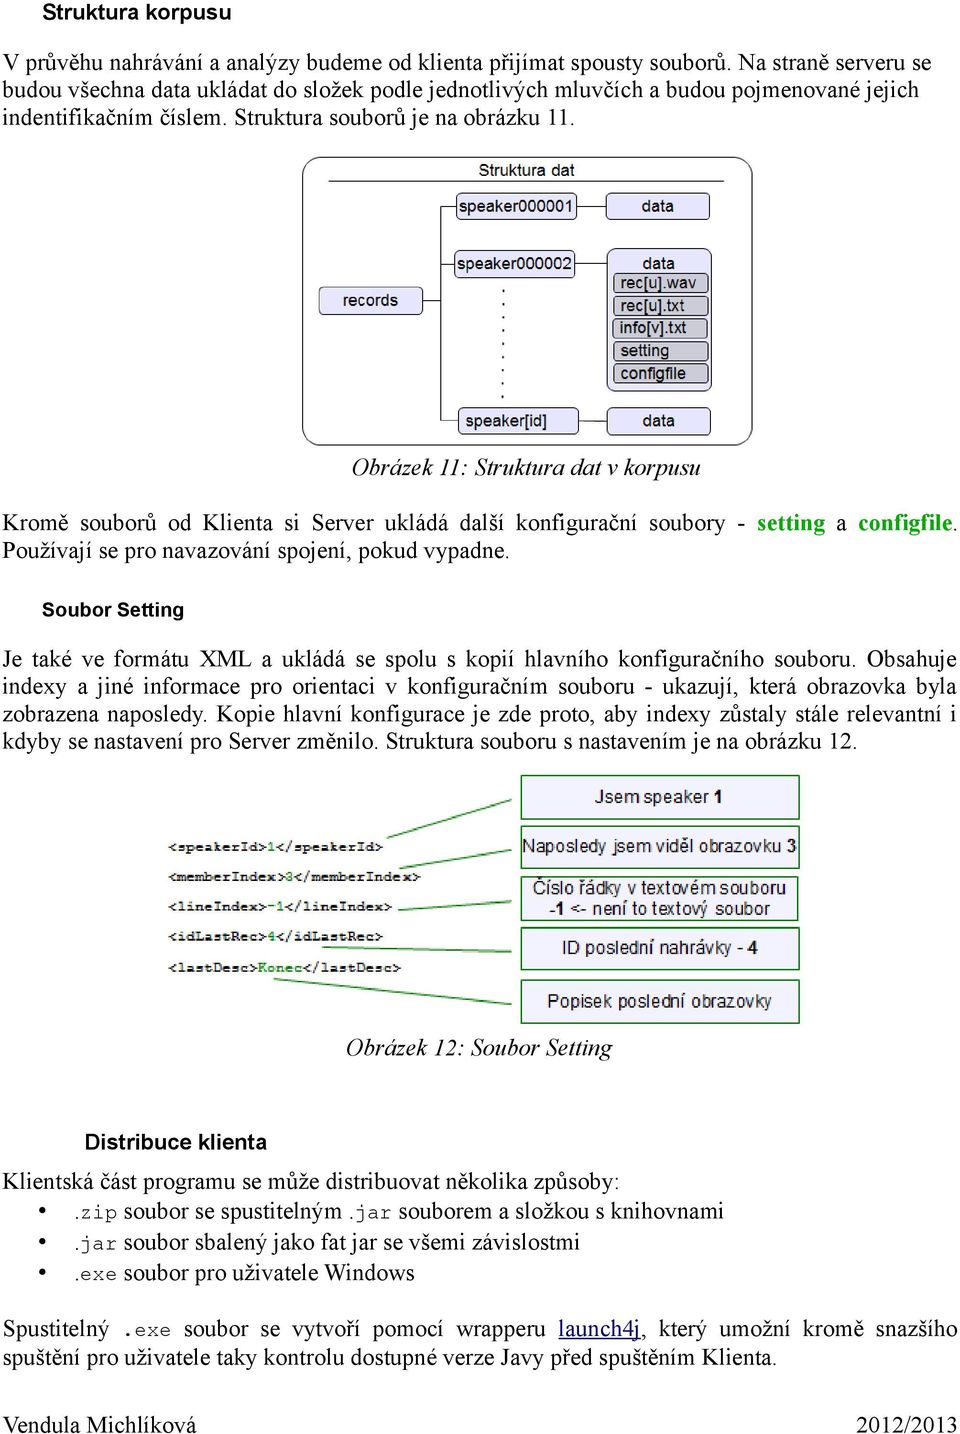 Obrázek 11: Struktura dat v korpusu Kromě souborů od Klienta si Server ukládá další konfigurační soubory - setting a configfile. Používají se pro navazování spojení, pokud vypadne.